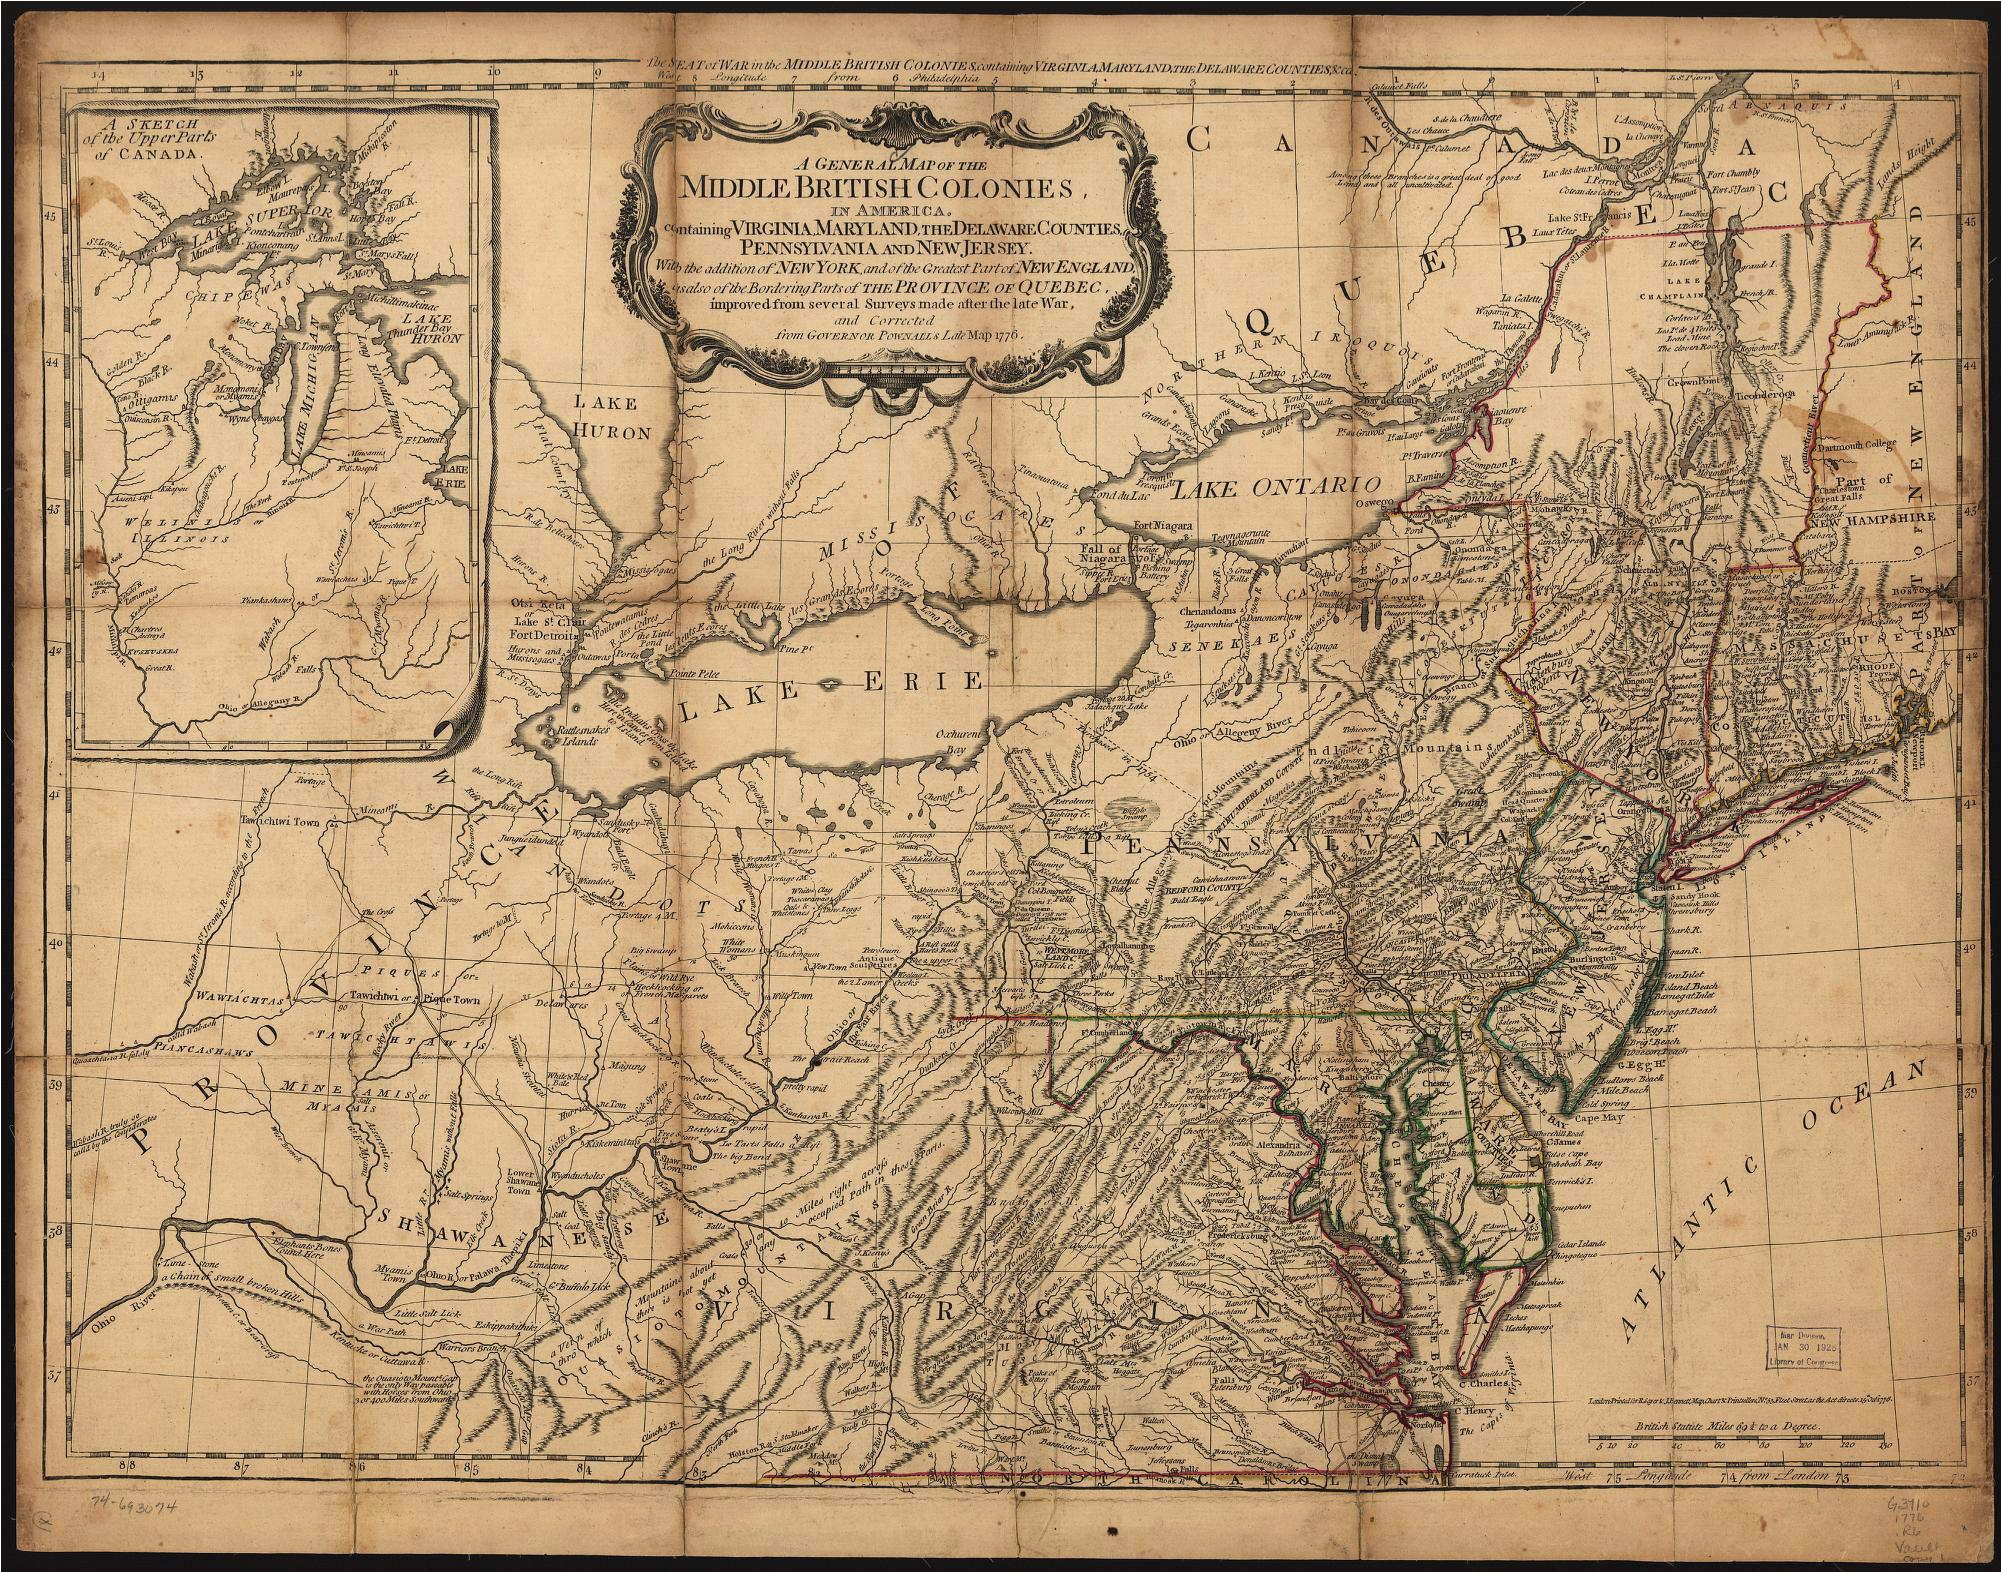 1775 to 1779 pennsylvania maps